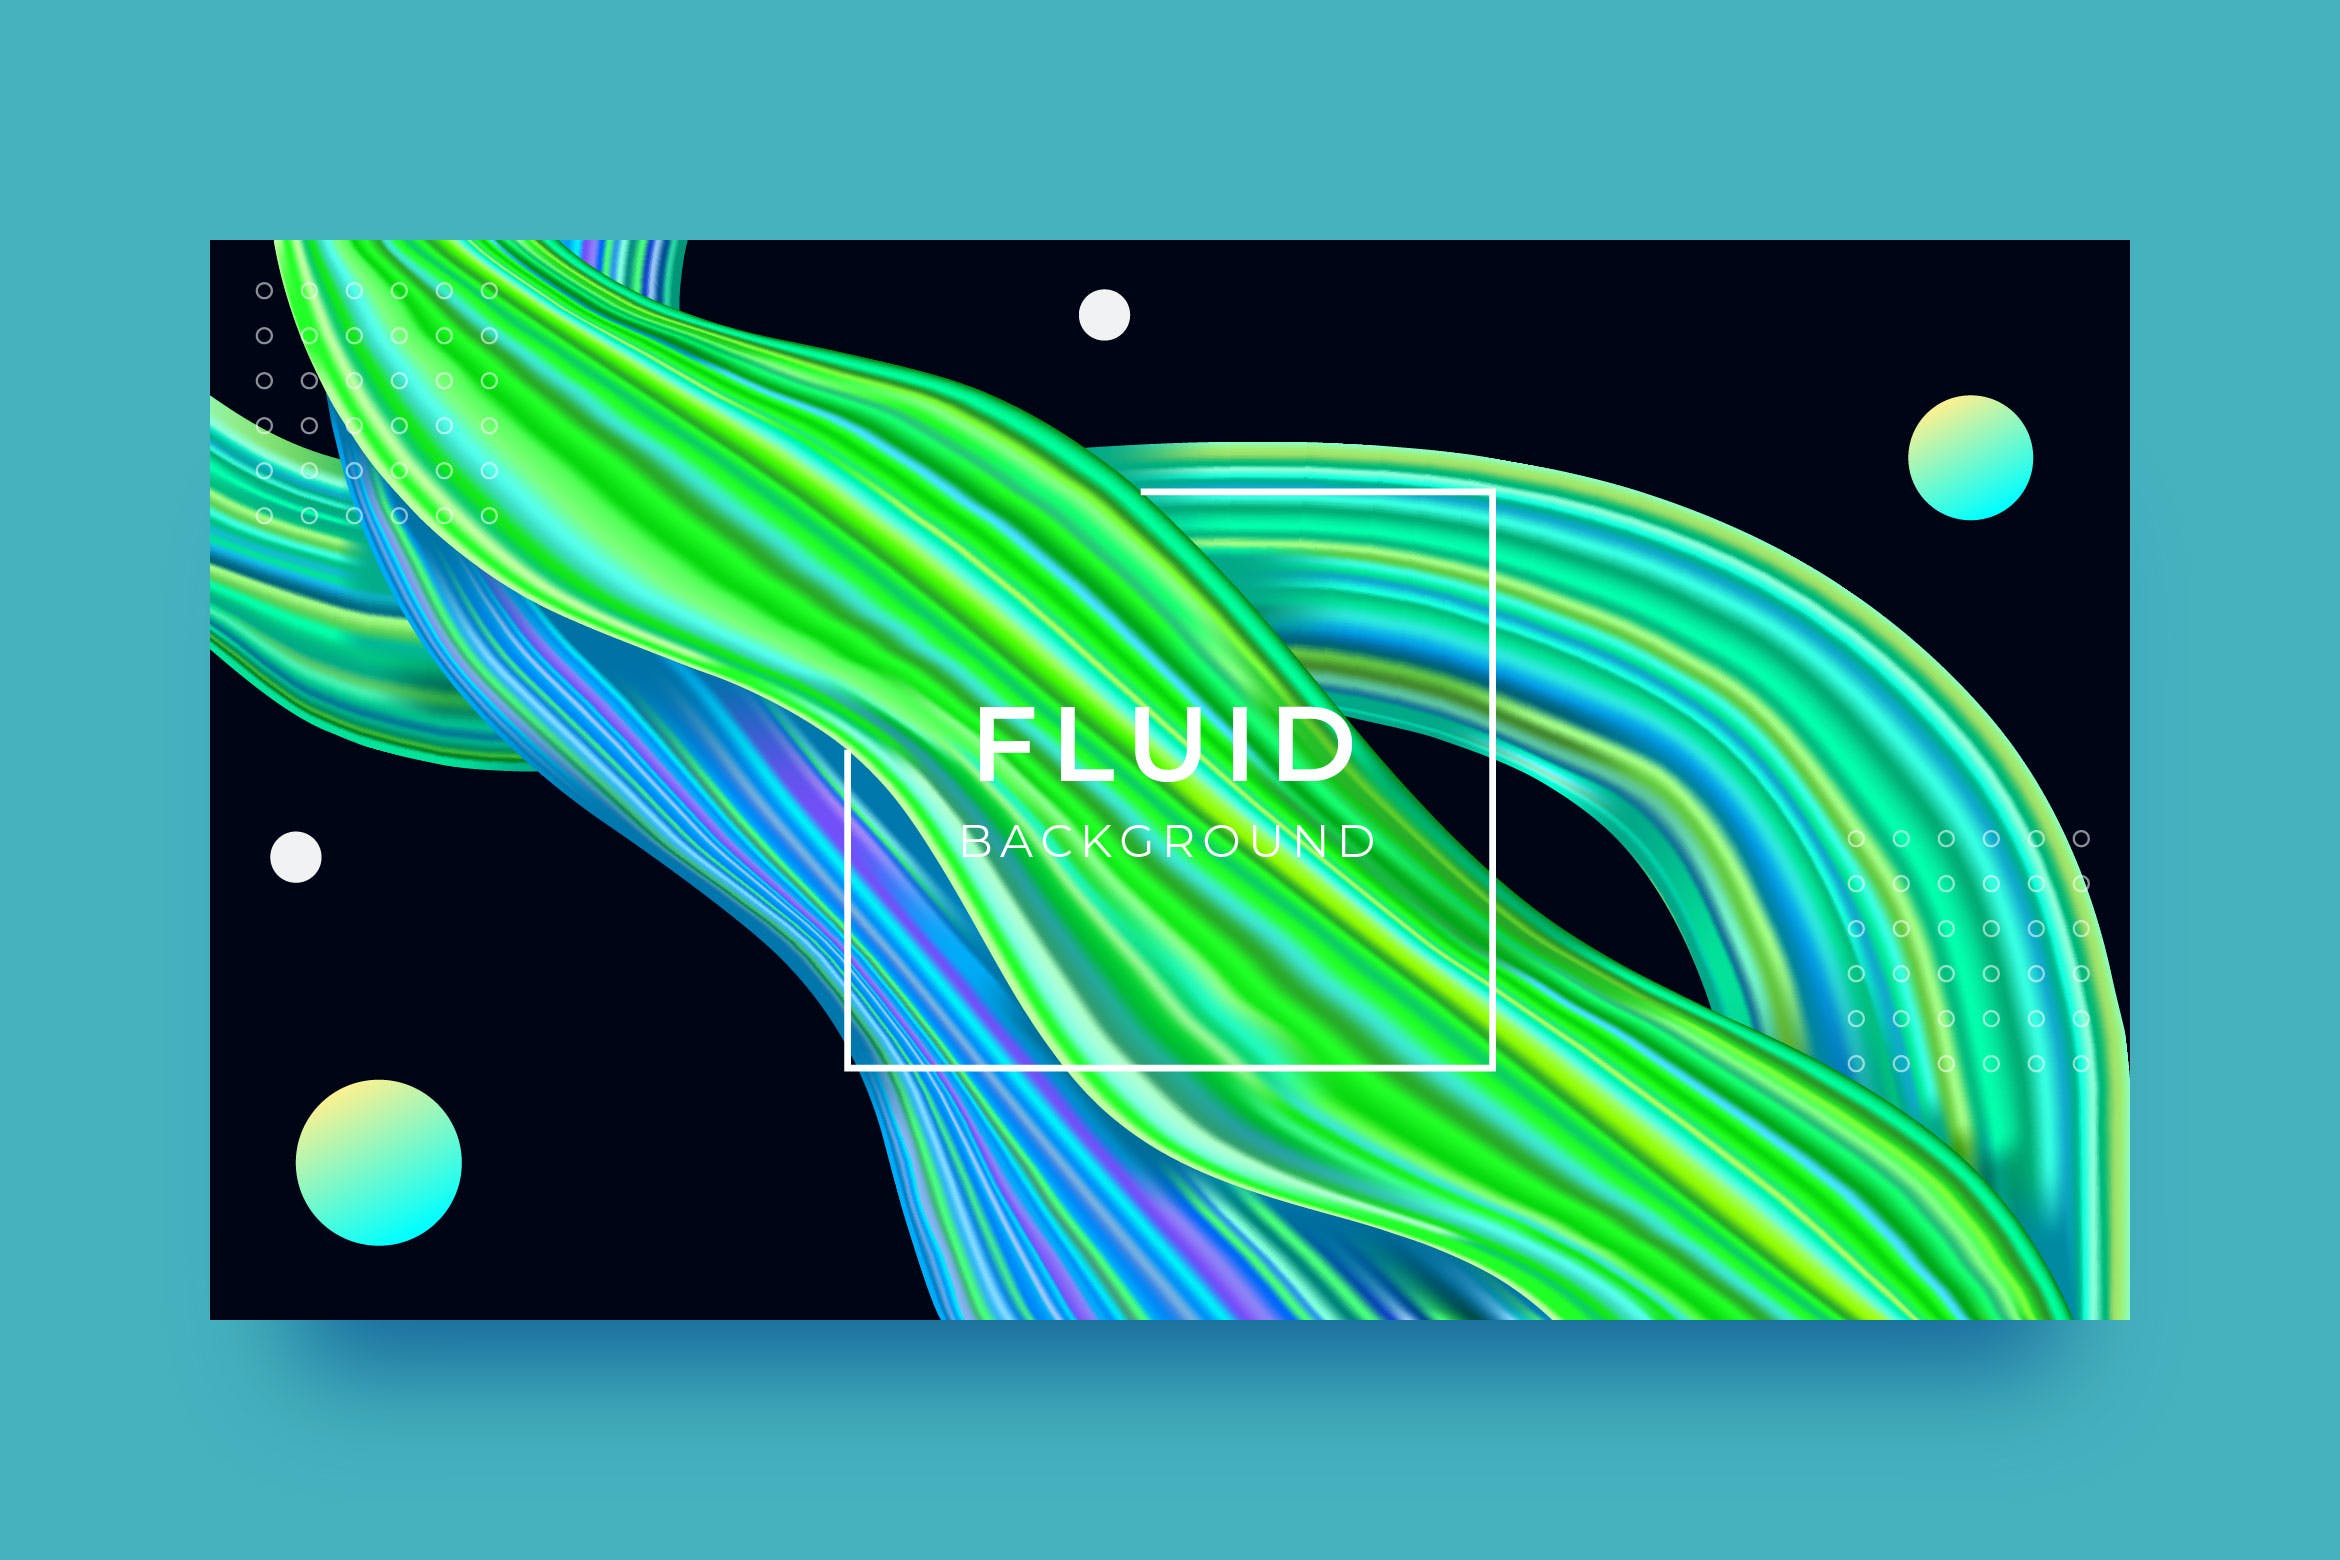 彩色液体抽象背景模板v2 Liquid Abstract Background 图片素材 第1张